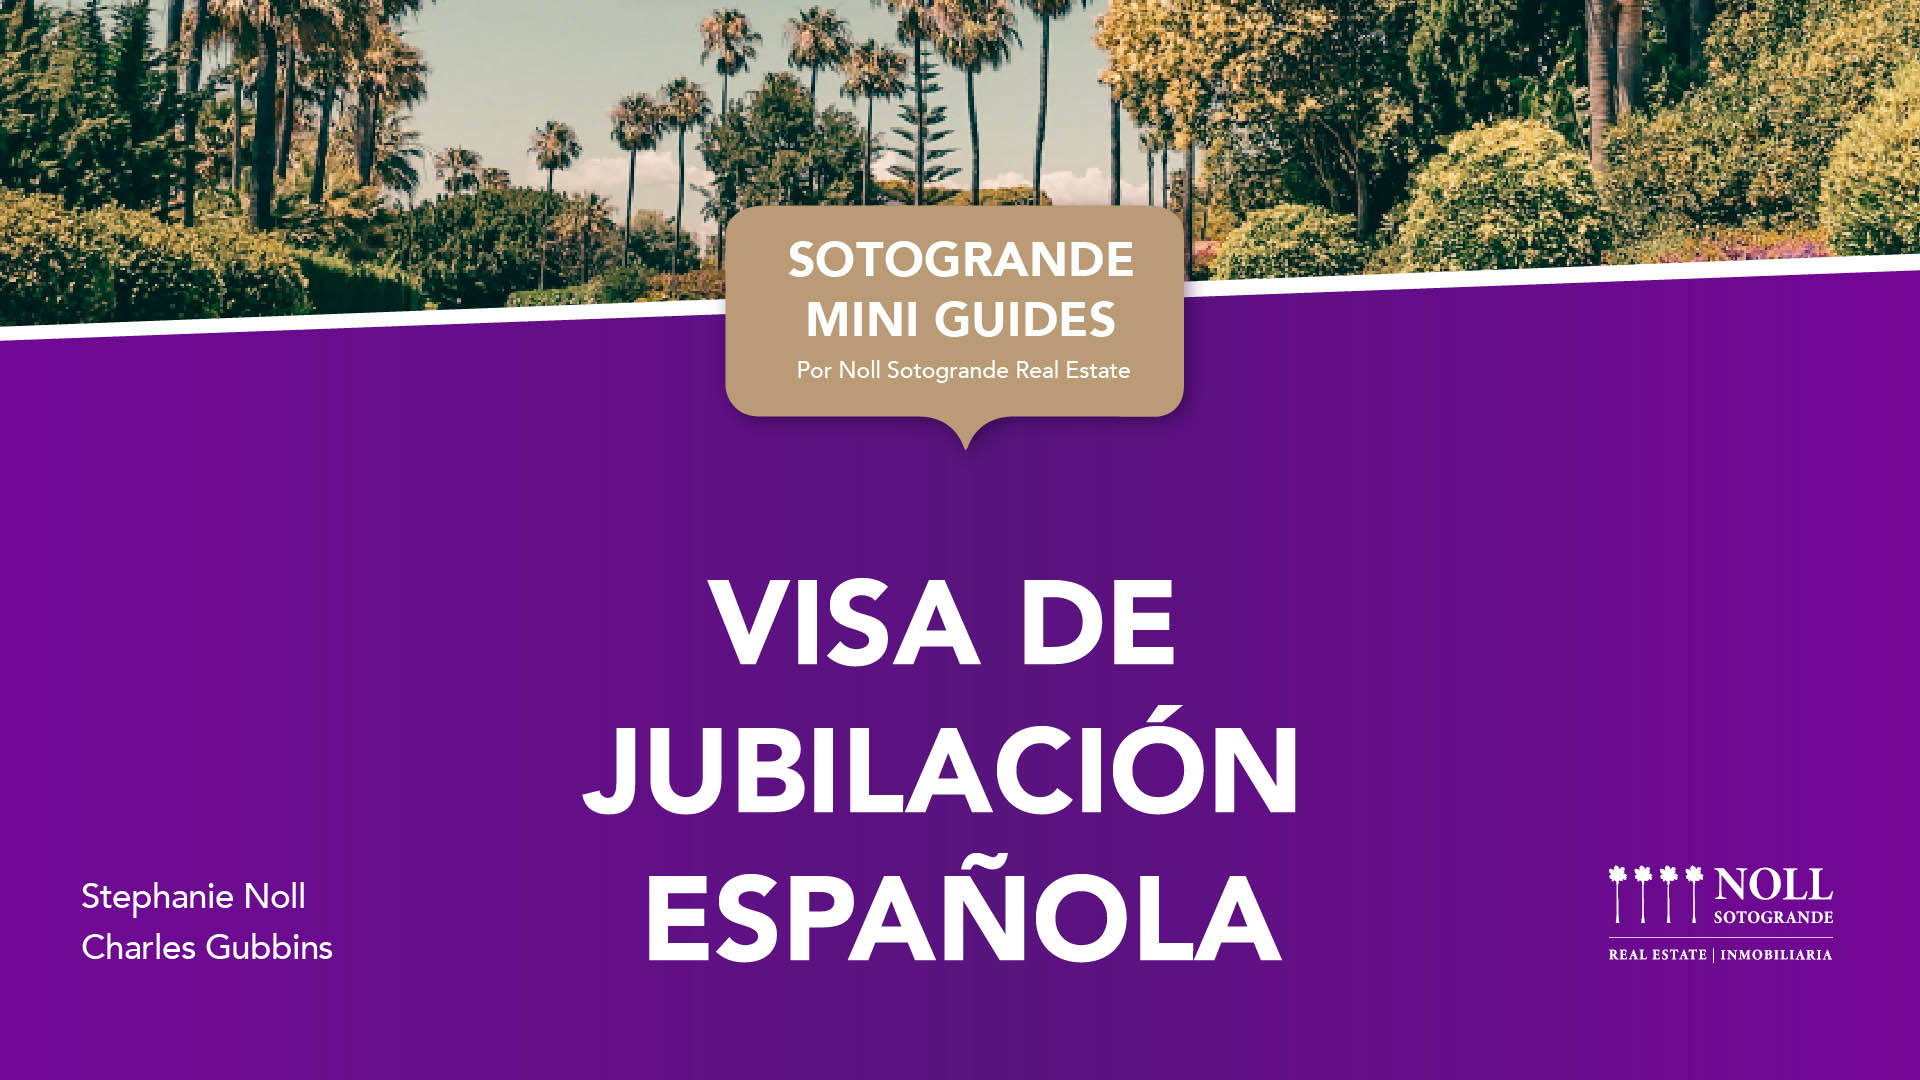 Visa de Jubilación Española por Noll Sotogrande Inmobiliaria 2021